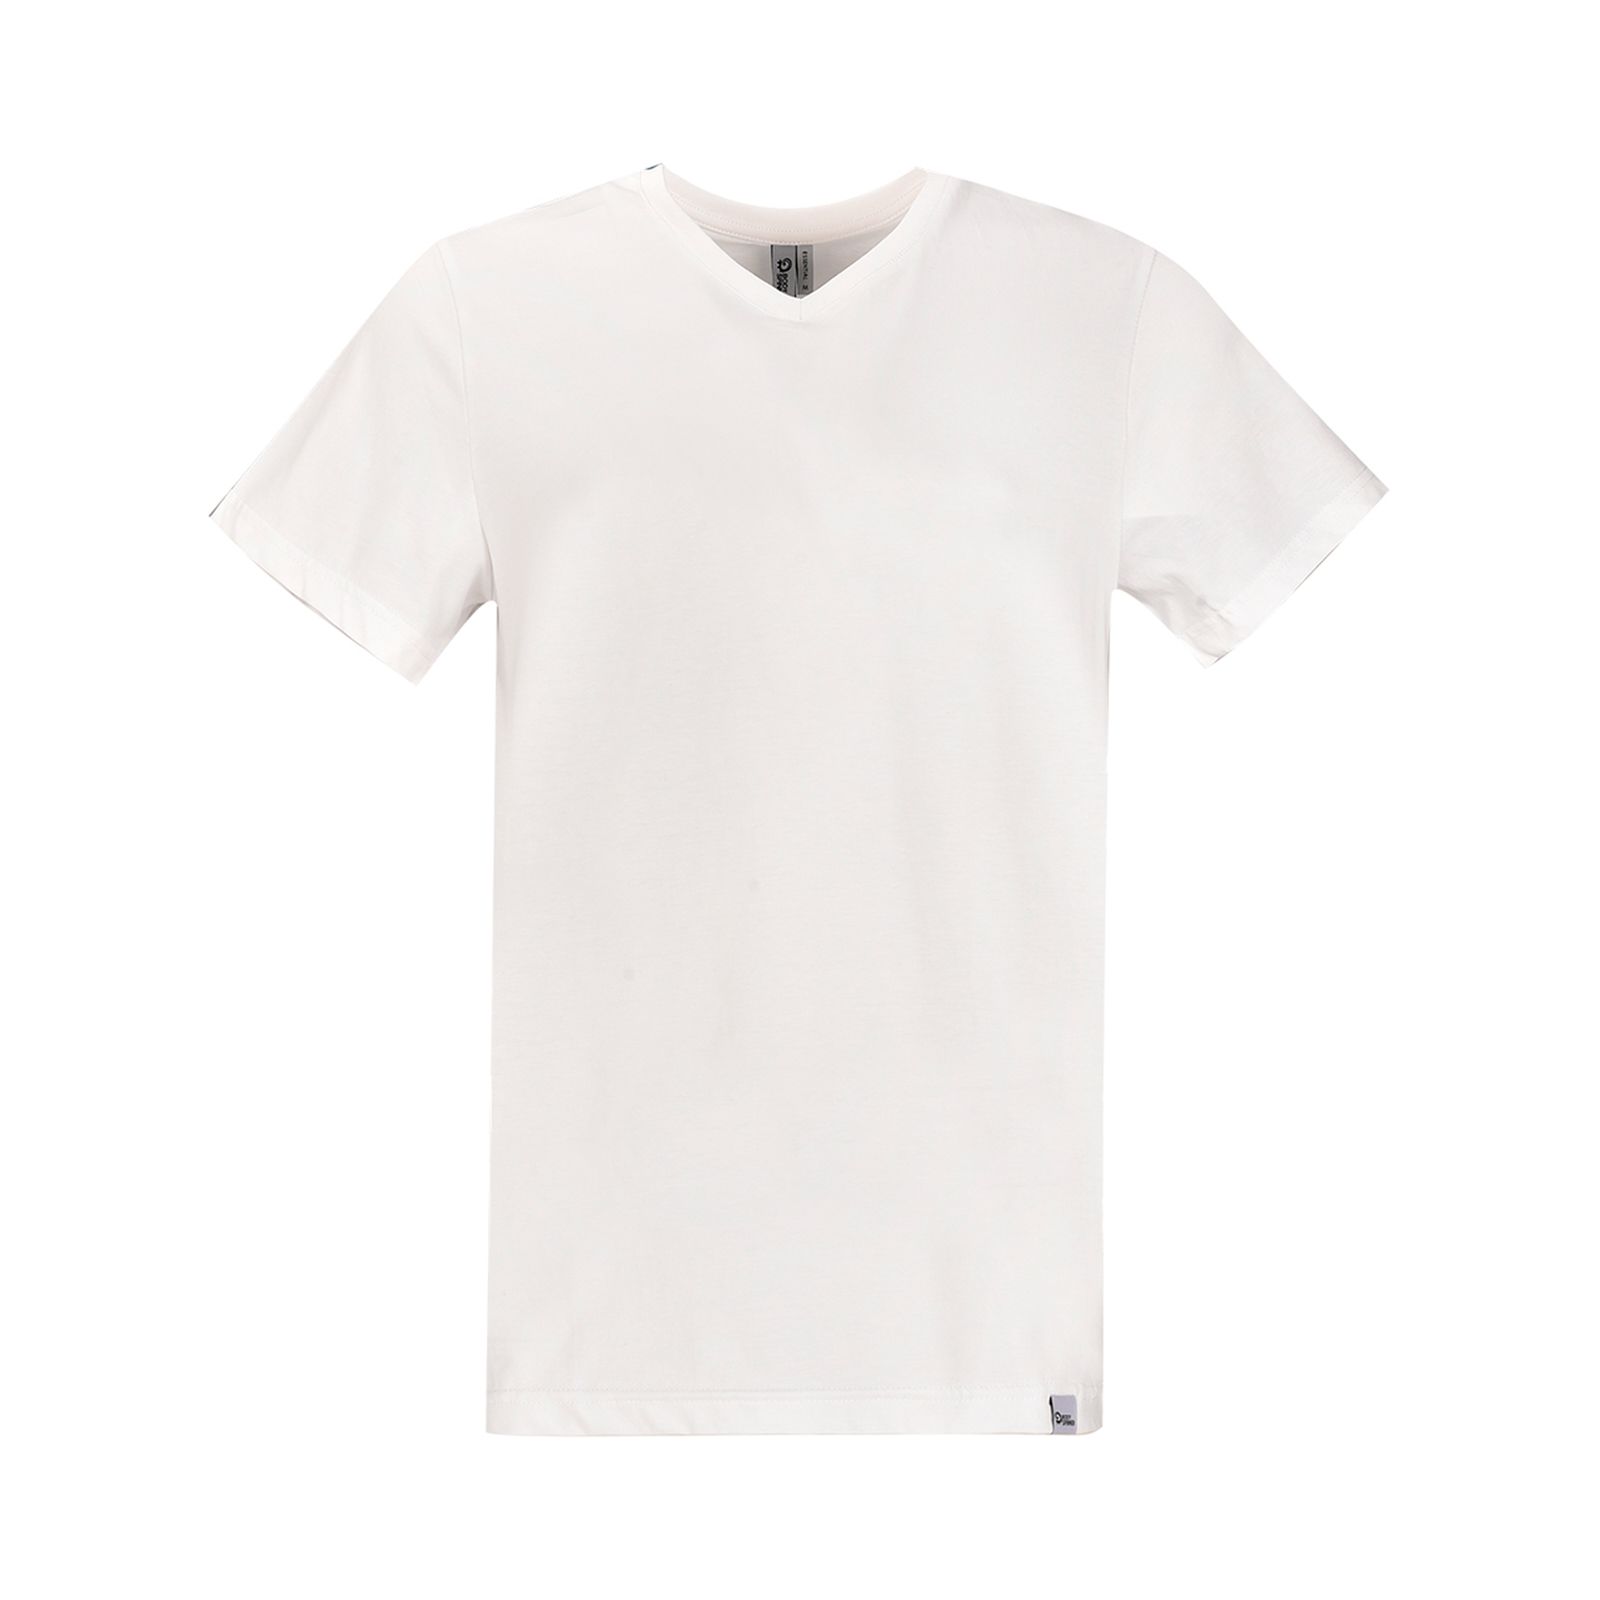 تی شرت آستین کوتاه مردانه بادی اسپینر مدل 5057 کد 1 رنگ سفيد -  - 1